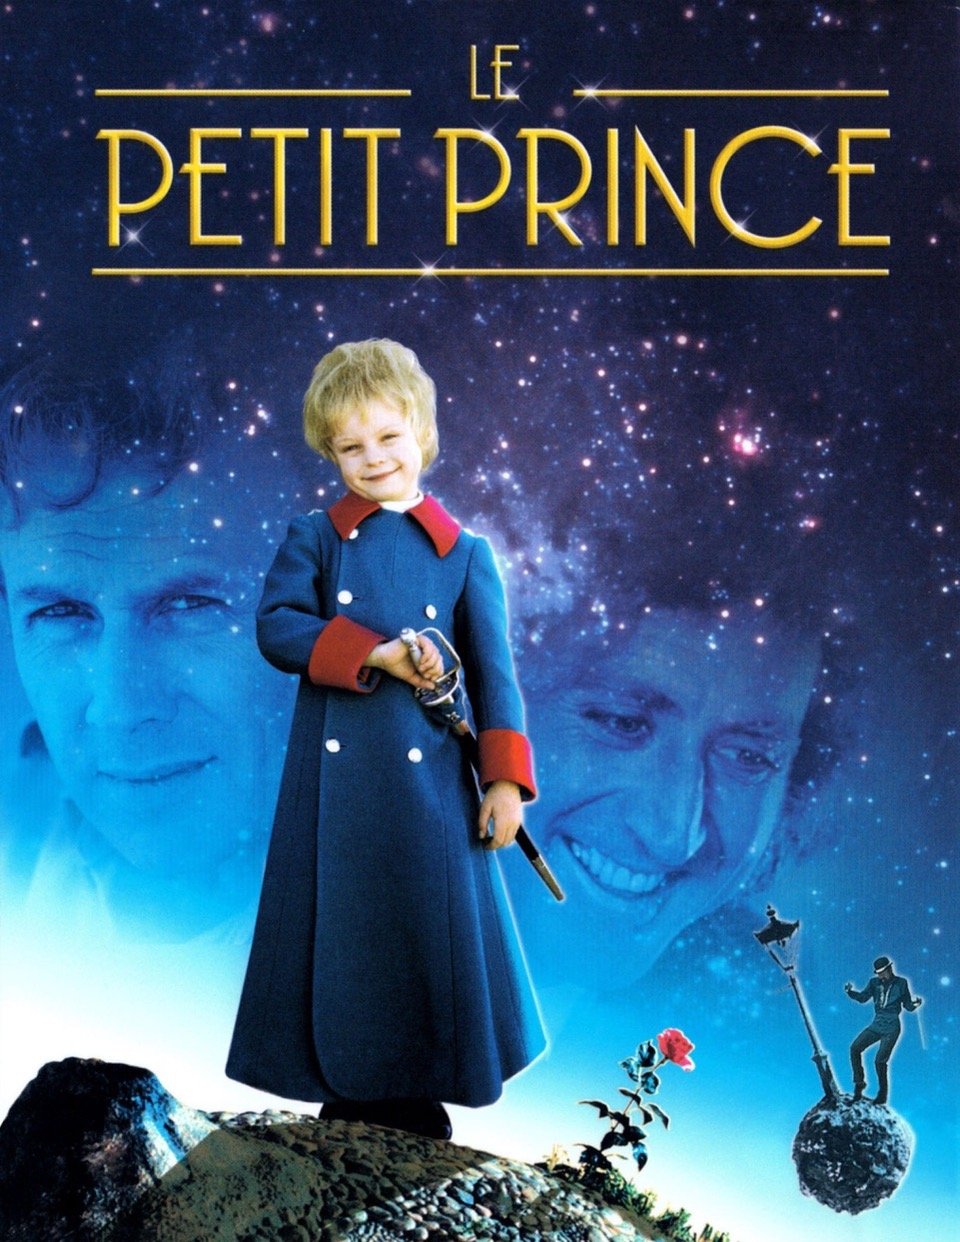 Le Petit prince en streaming - AlloCiné